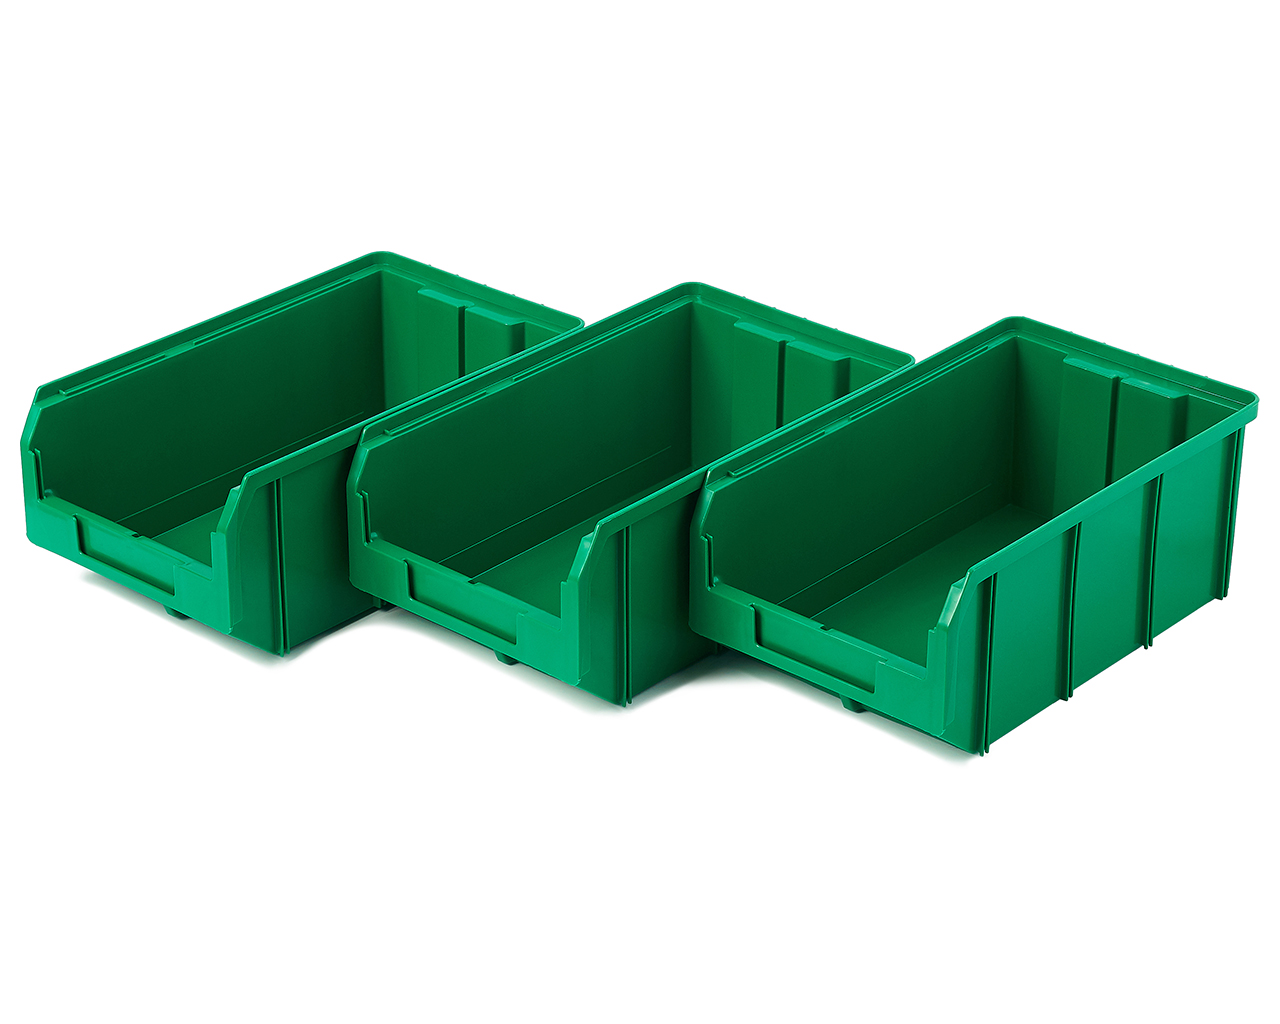 Пластиковый ящик Стелла-техник V-3-К3-зеленый , 342х207х143мм, комплект 3 штуки мельница пластиковый механизм 115 мл 45 80 гр зеленый